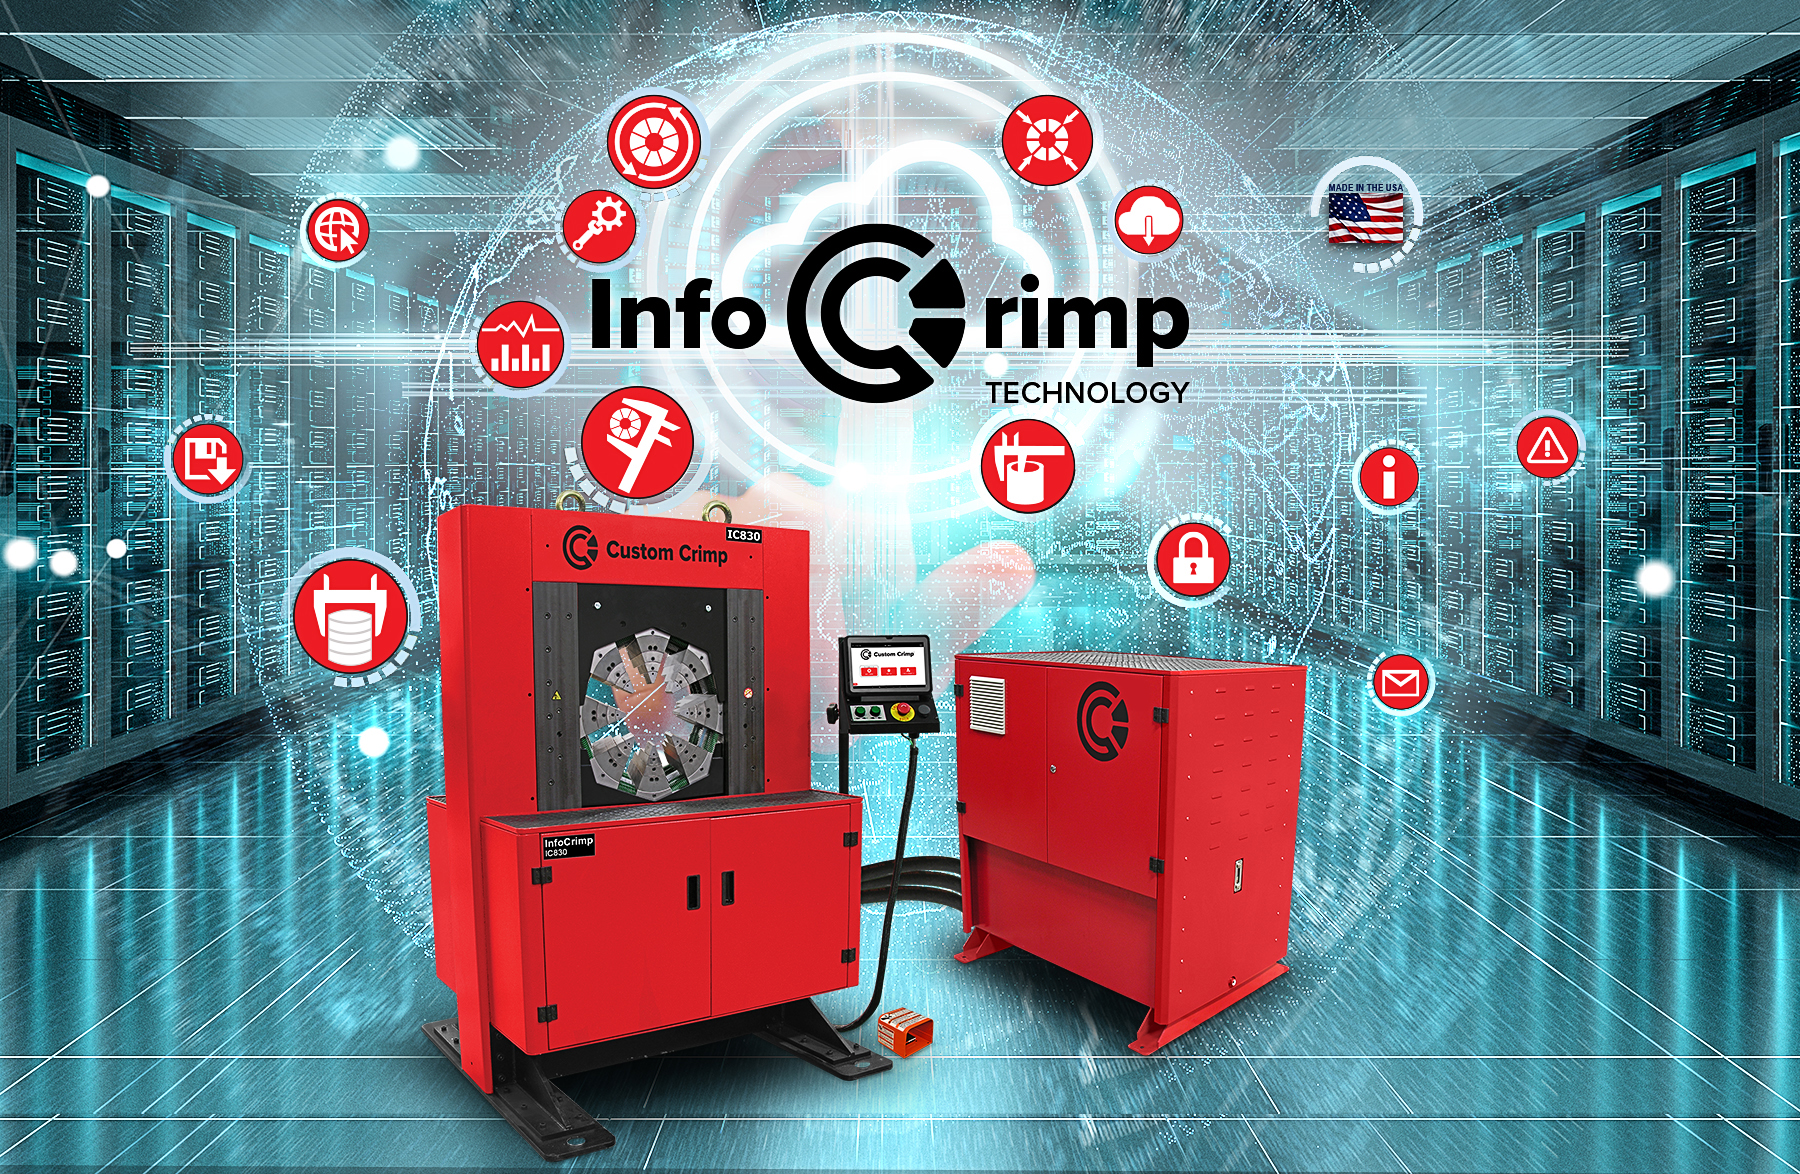 IC830 Crimper - InfoCrimp™ Technology